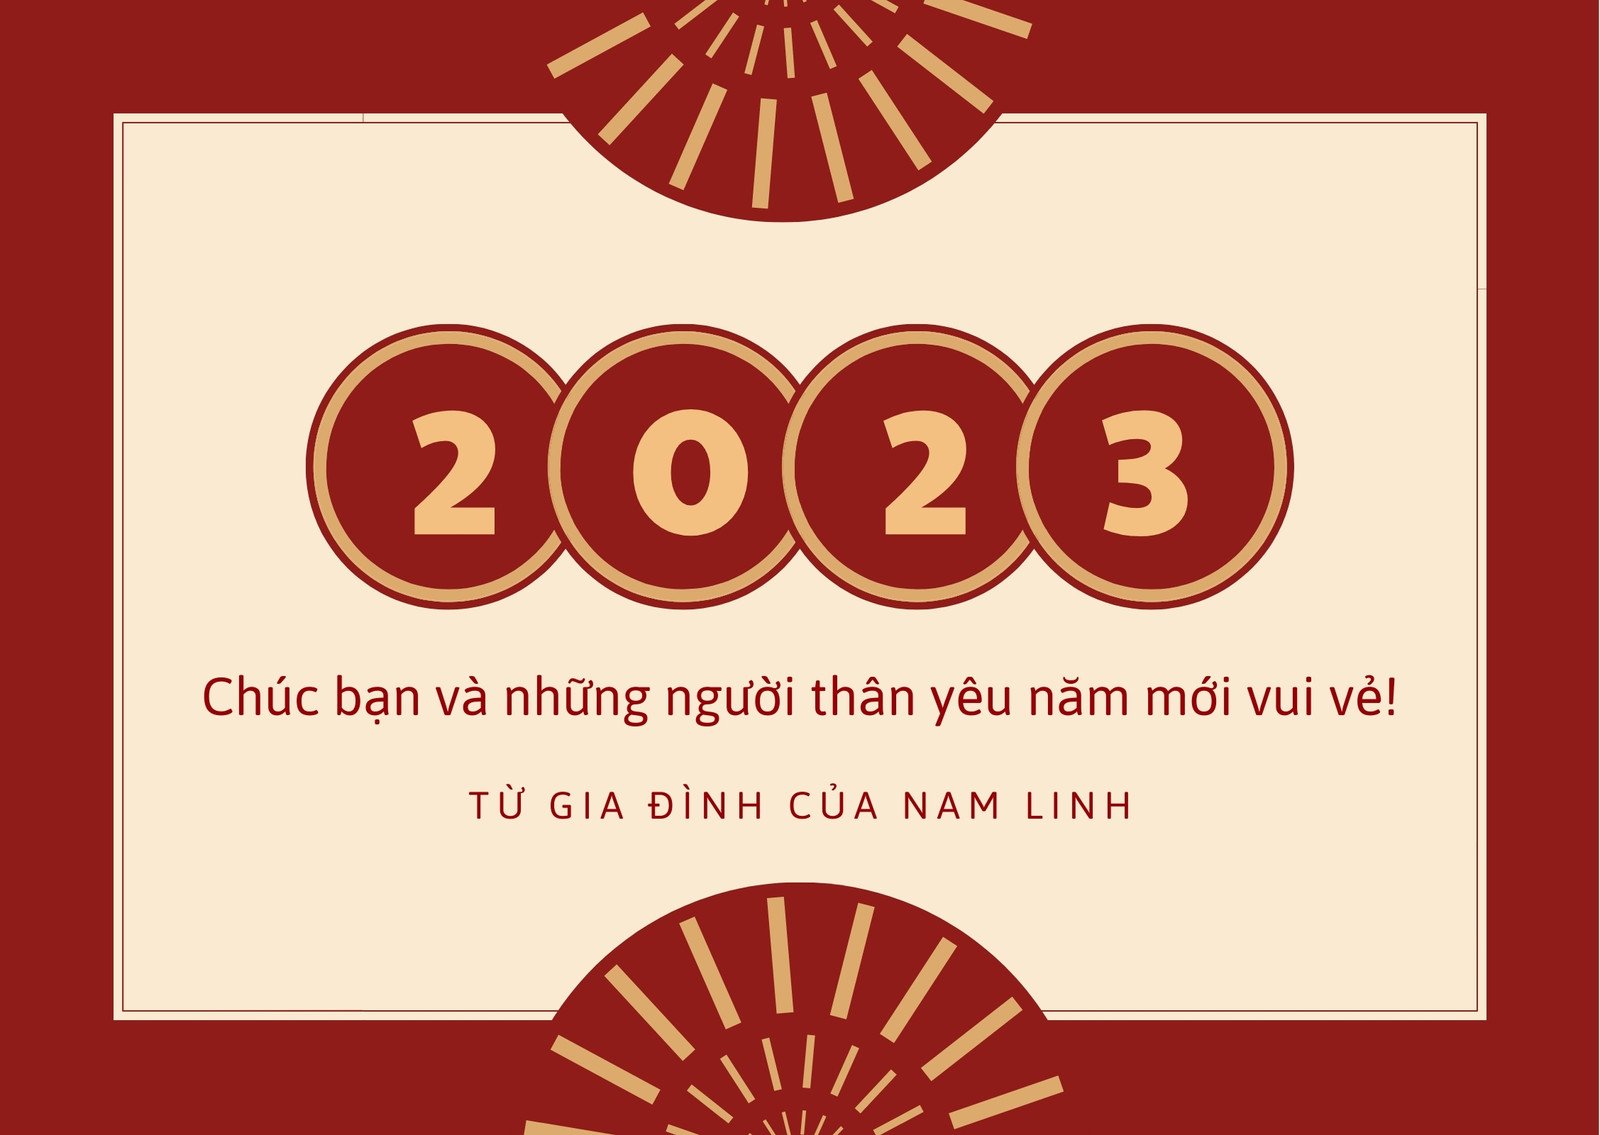 Thiệp chúc Tết đẹp và ý nghĩa năm 2023 dành tặng người thân